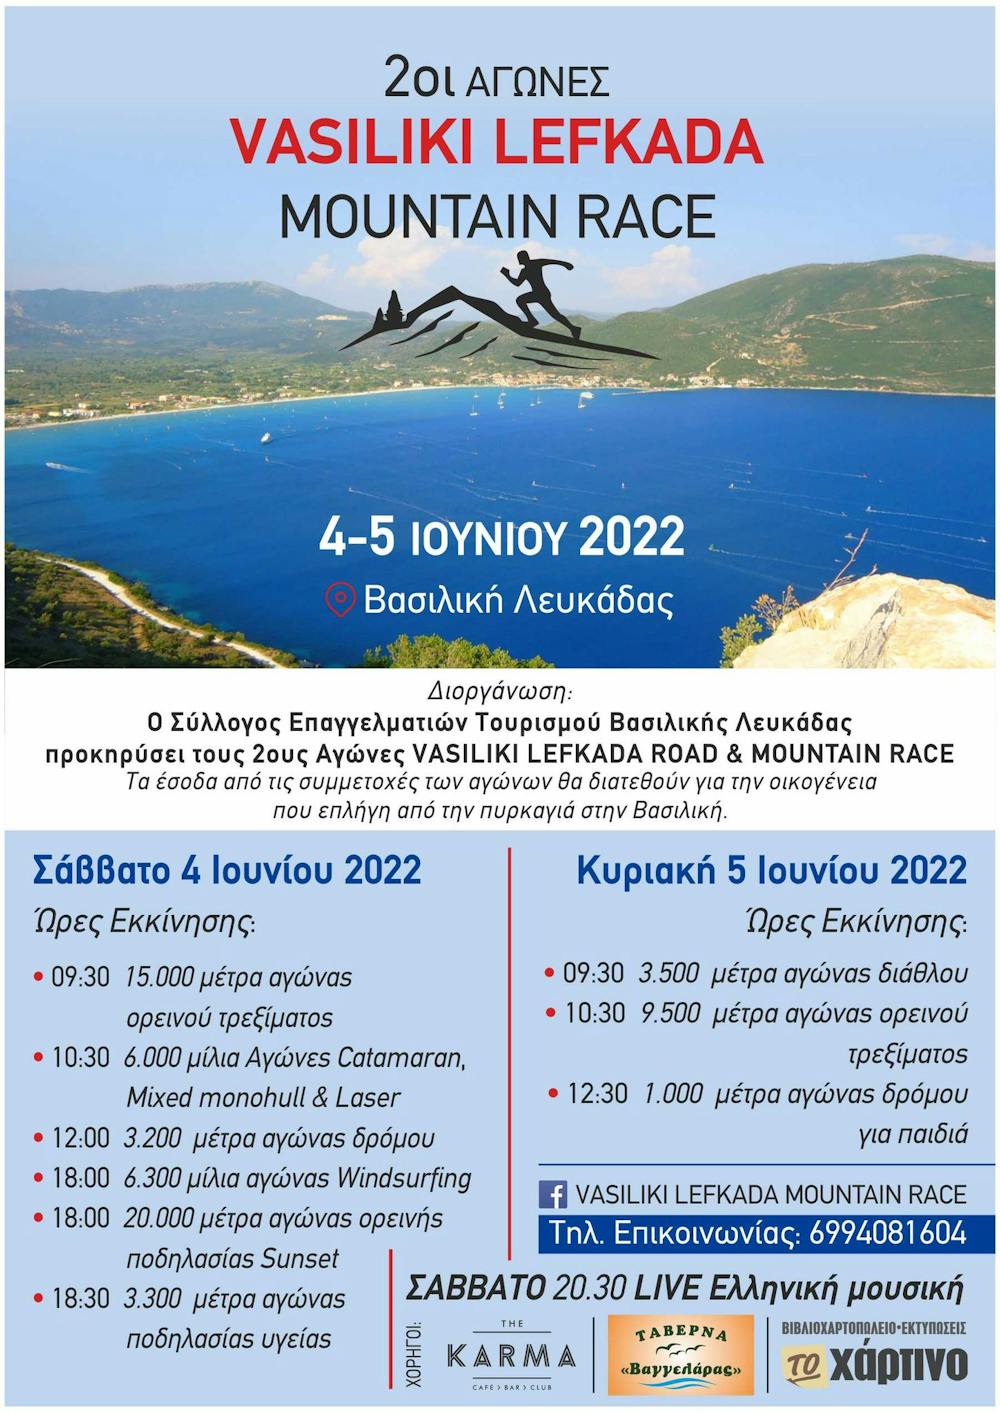 Το τελικό πρόγραμμα του Vasiliki Lefkada Mountain Race (Pic) runbeat.gr 